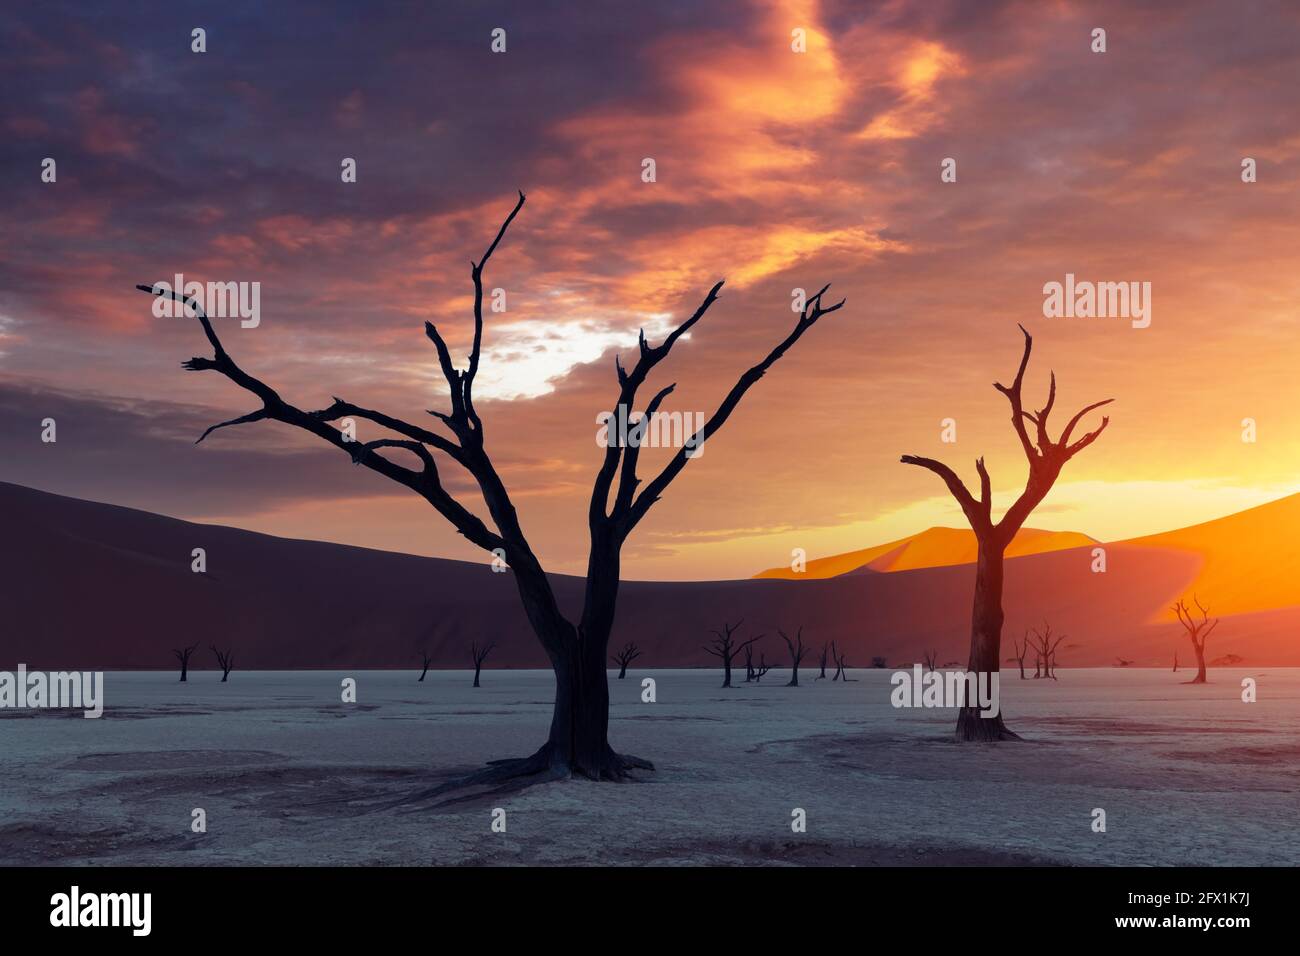 Arbres Camelthorn morts au coucher du soleil, Deadvlei, parc national Namib-Naukluft, Namibie, Afrique. Arbres séchés dans le désert du Namib. Photographie de paysage Banque D'Images